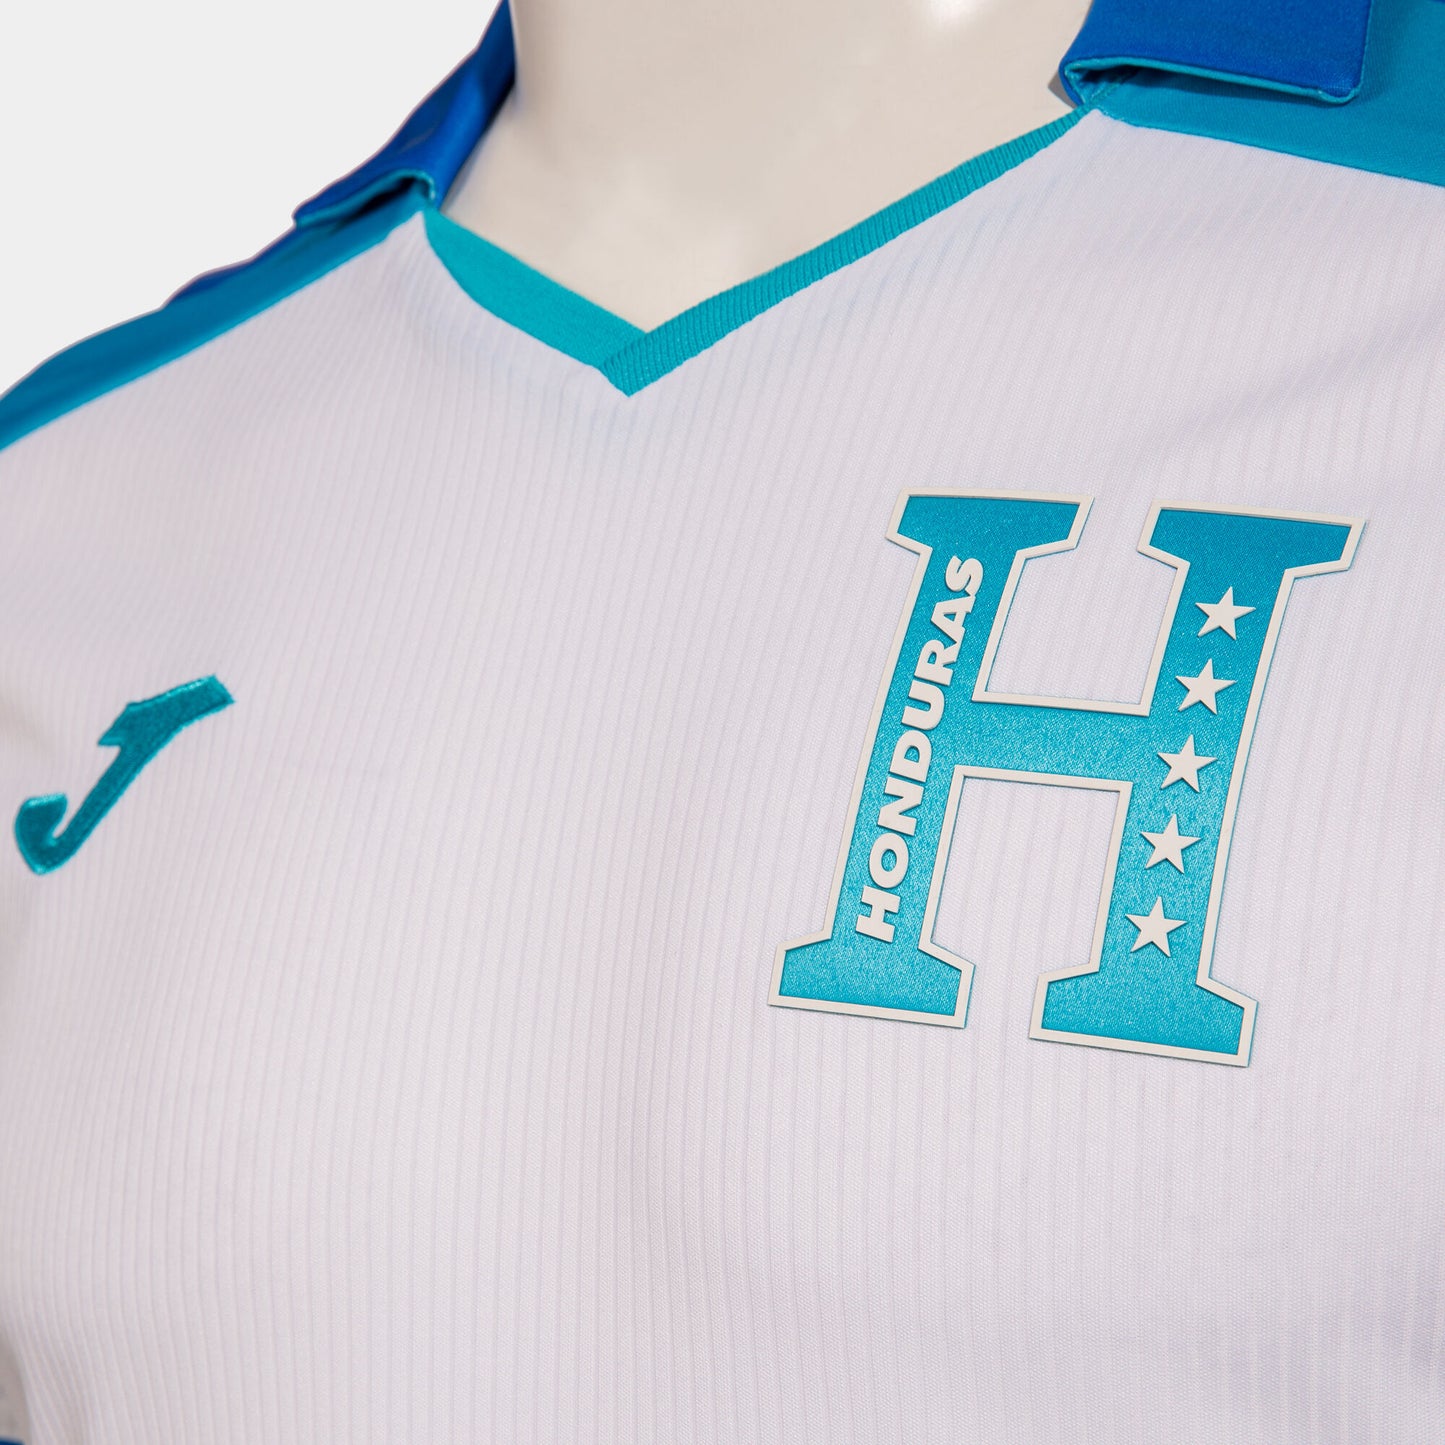 Joma Camiseta Selección de Honduras Local 23-24